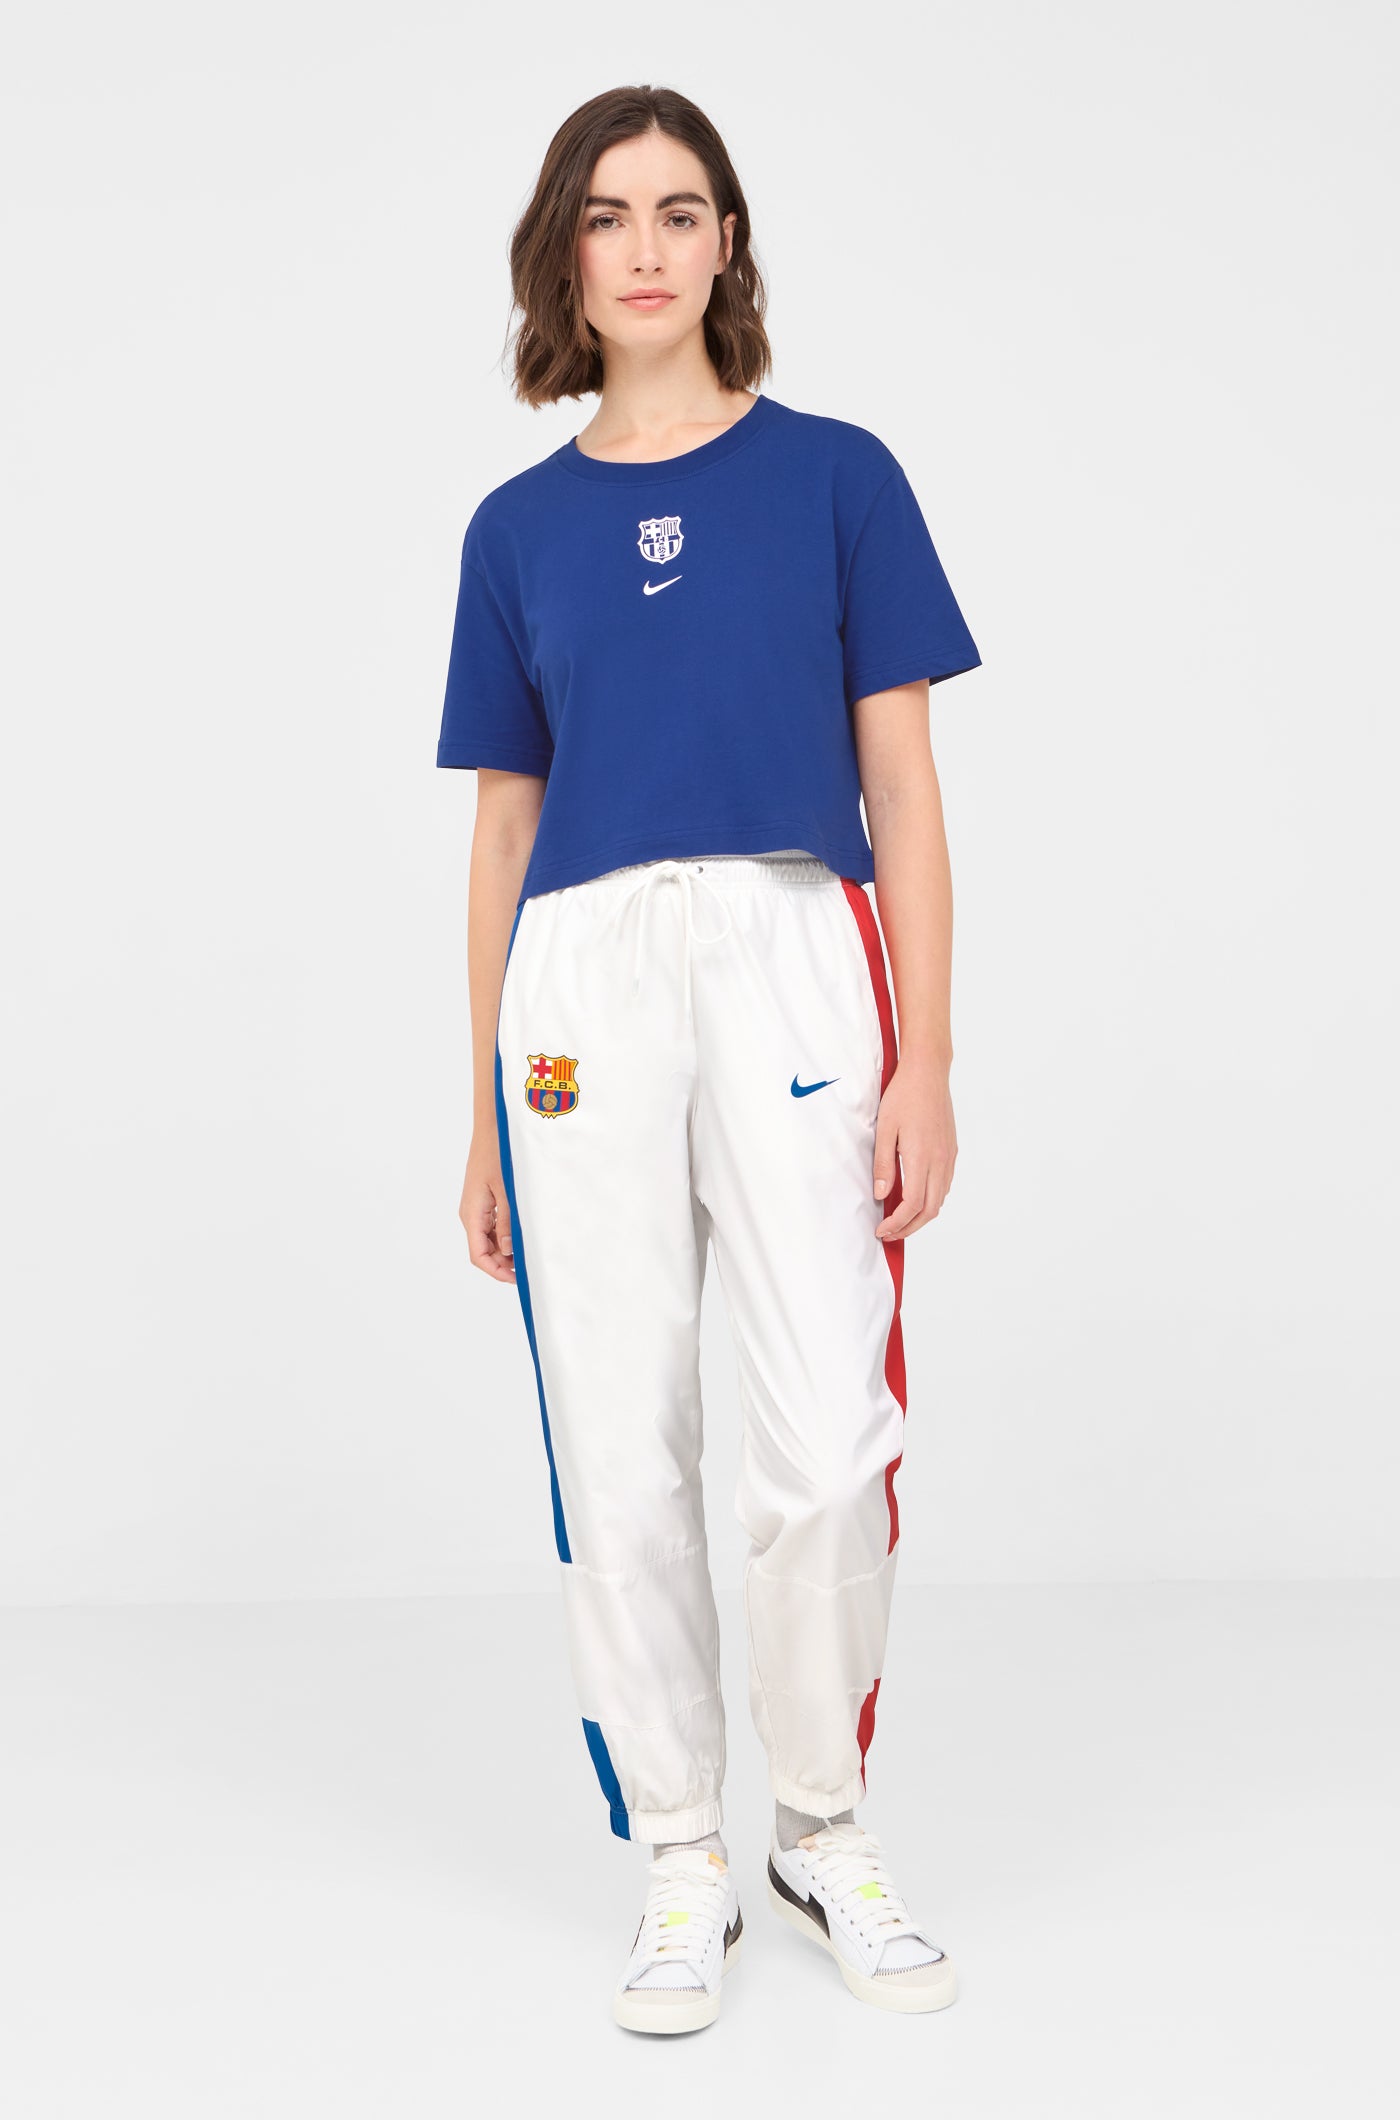 Pants white Barça Nike - Women